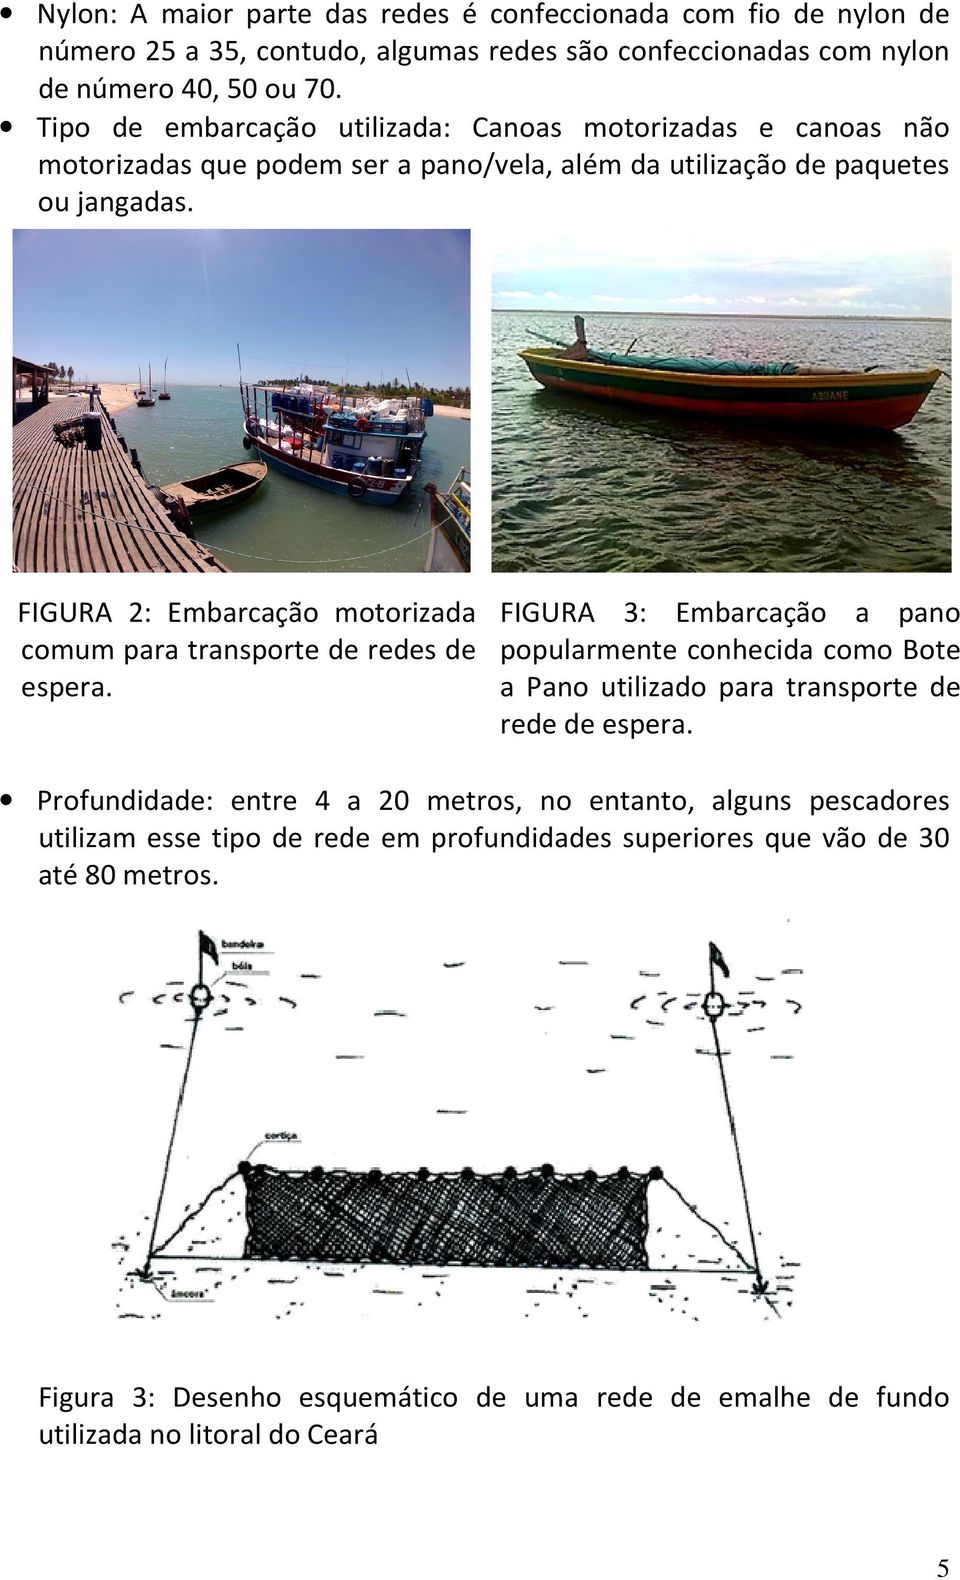 FIGURA 2: Embarcação motorizada comum para transporte de redes de espera.